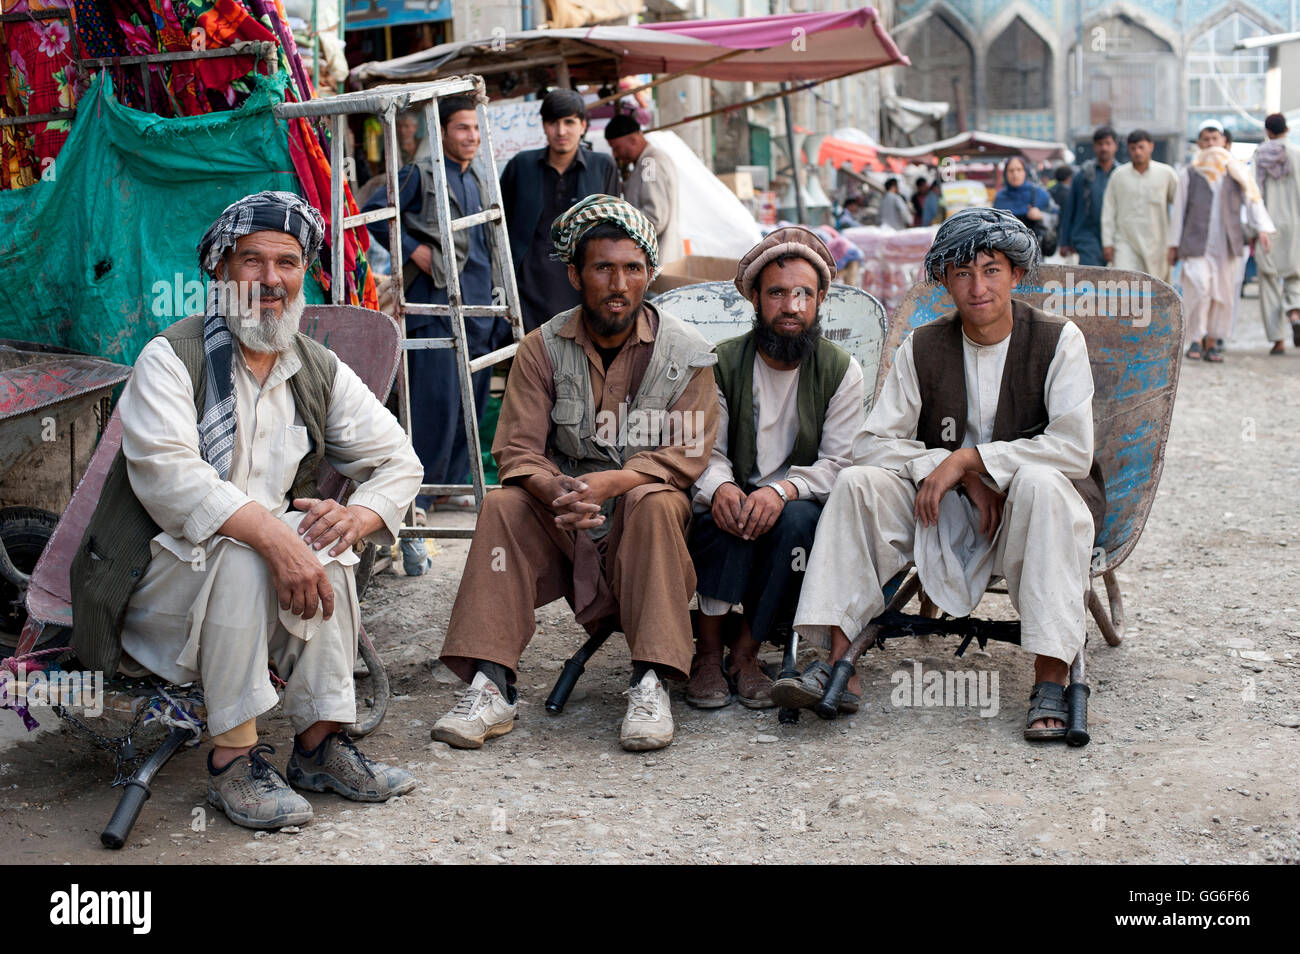 Prendre une charge hors tension, un temps rapide pour ces Afghans qui travaillent dur dans un bazar de Kaboul, Afghanistan, Asie Banque D'Images